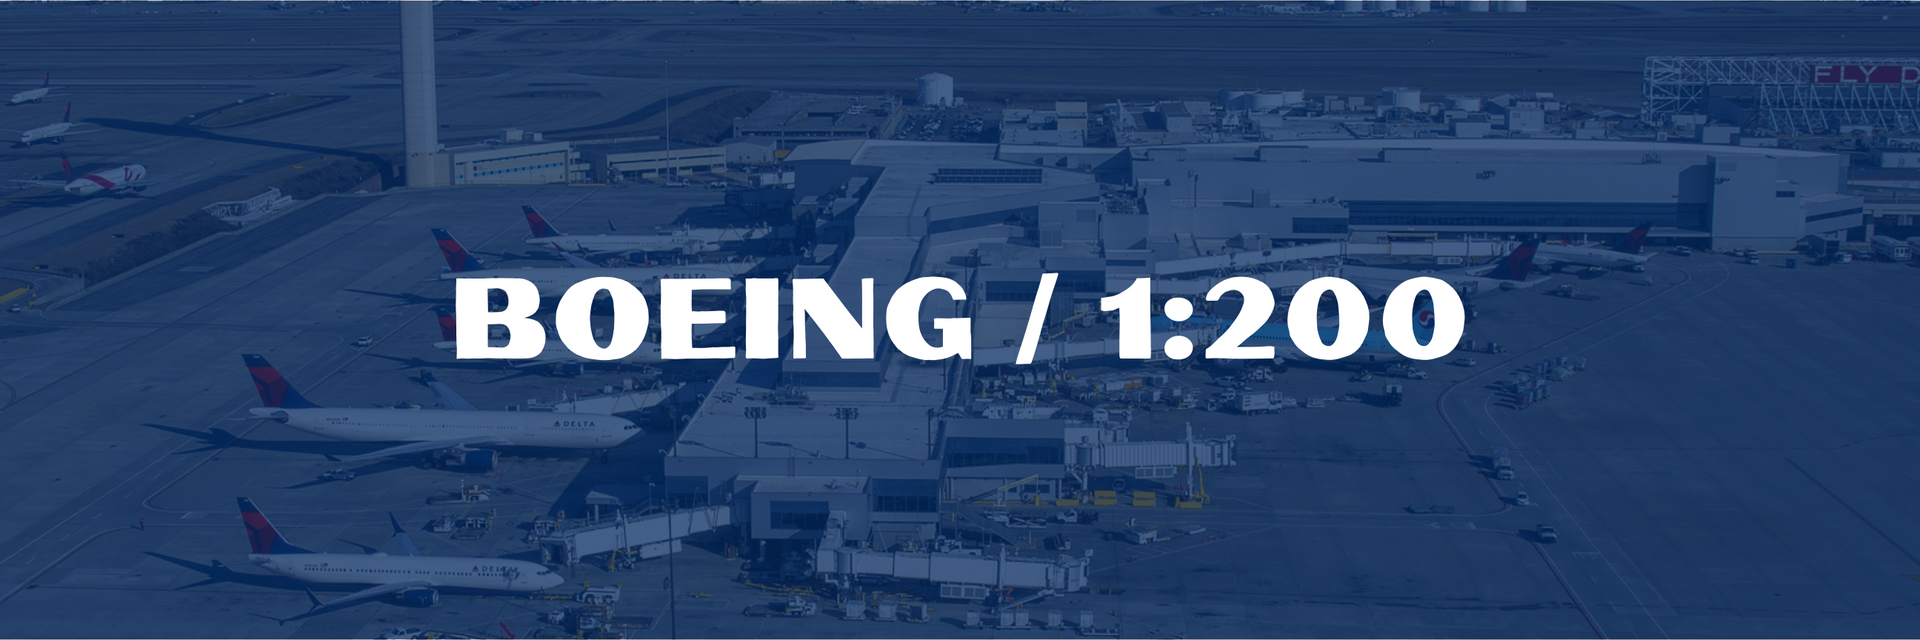 Boeing Models / 1:200